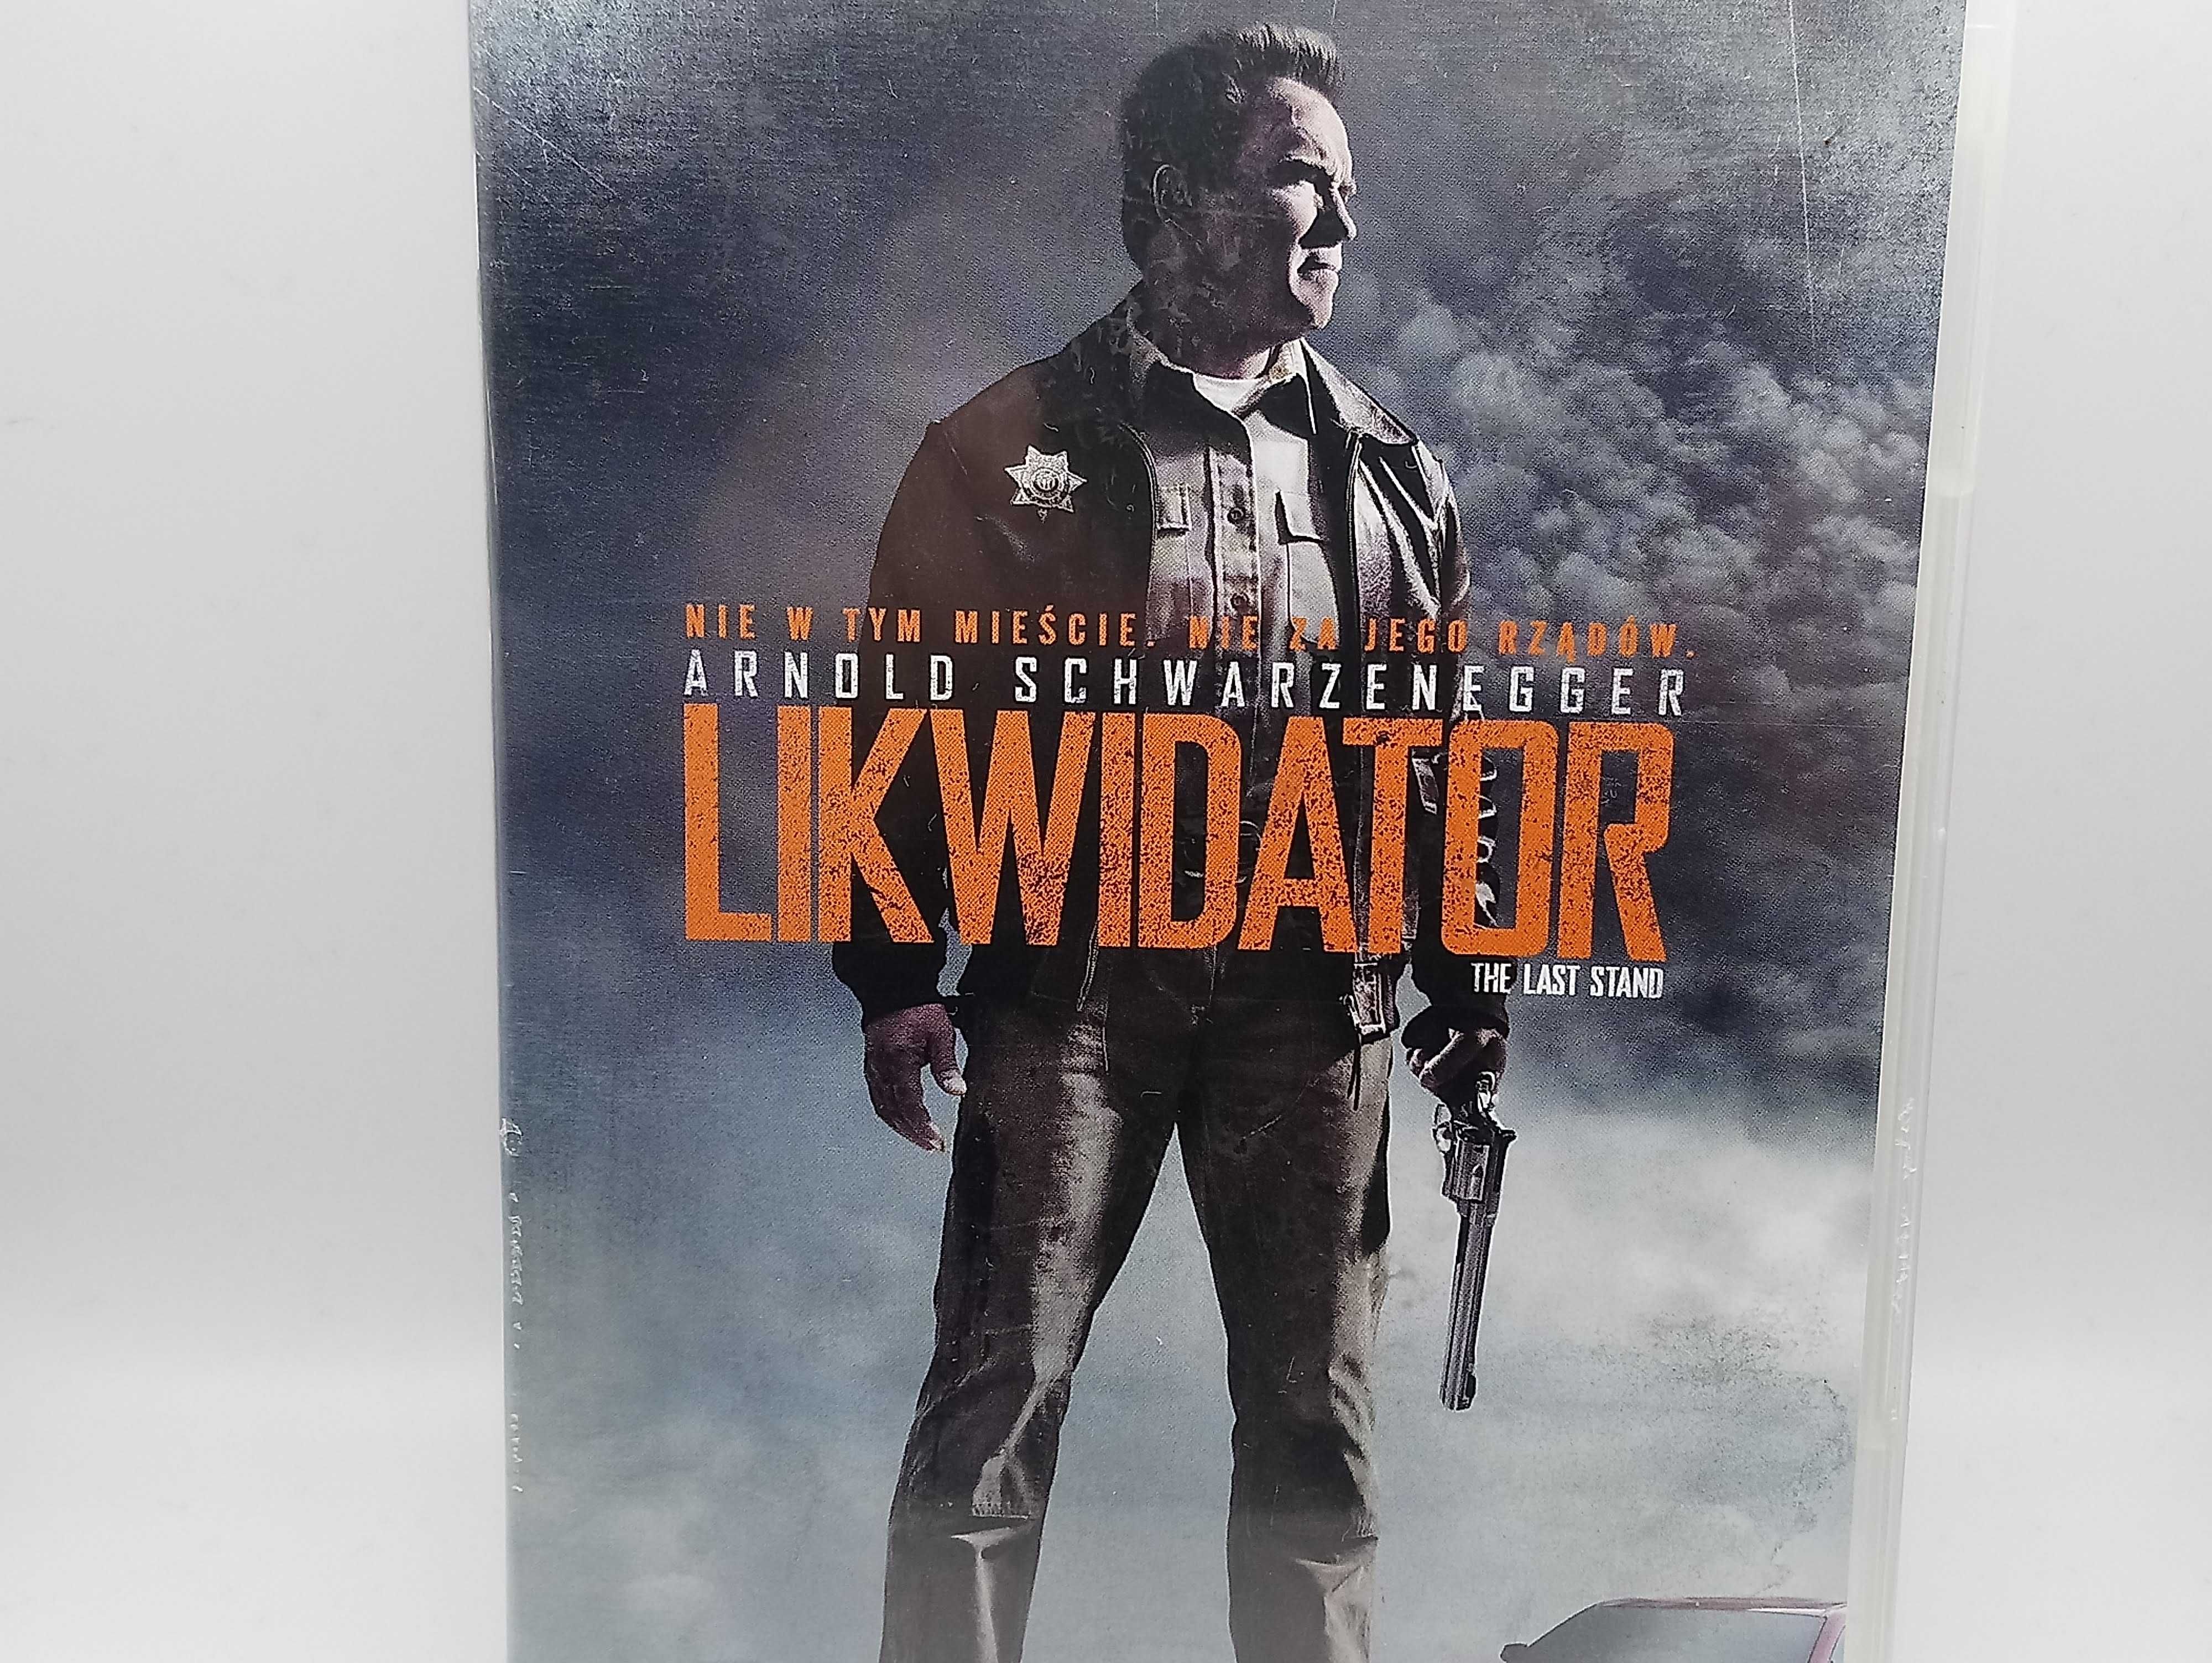 DVD film PL Lektor Likwidator